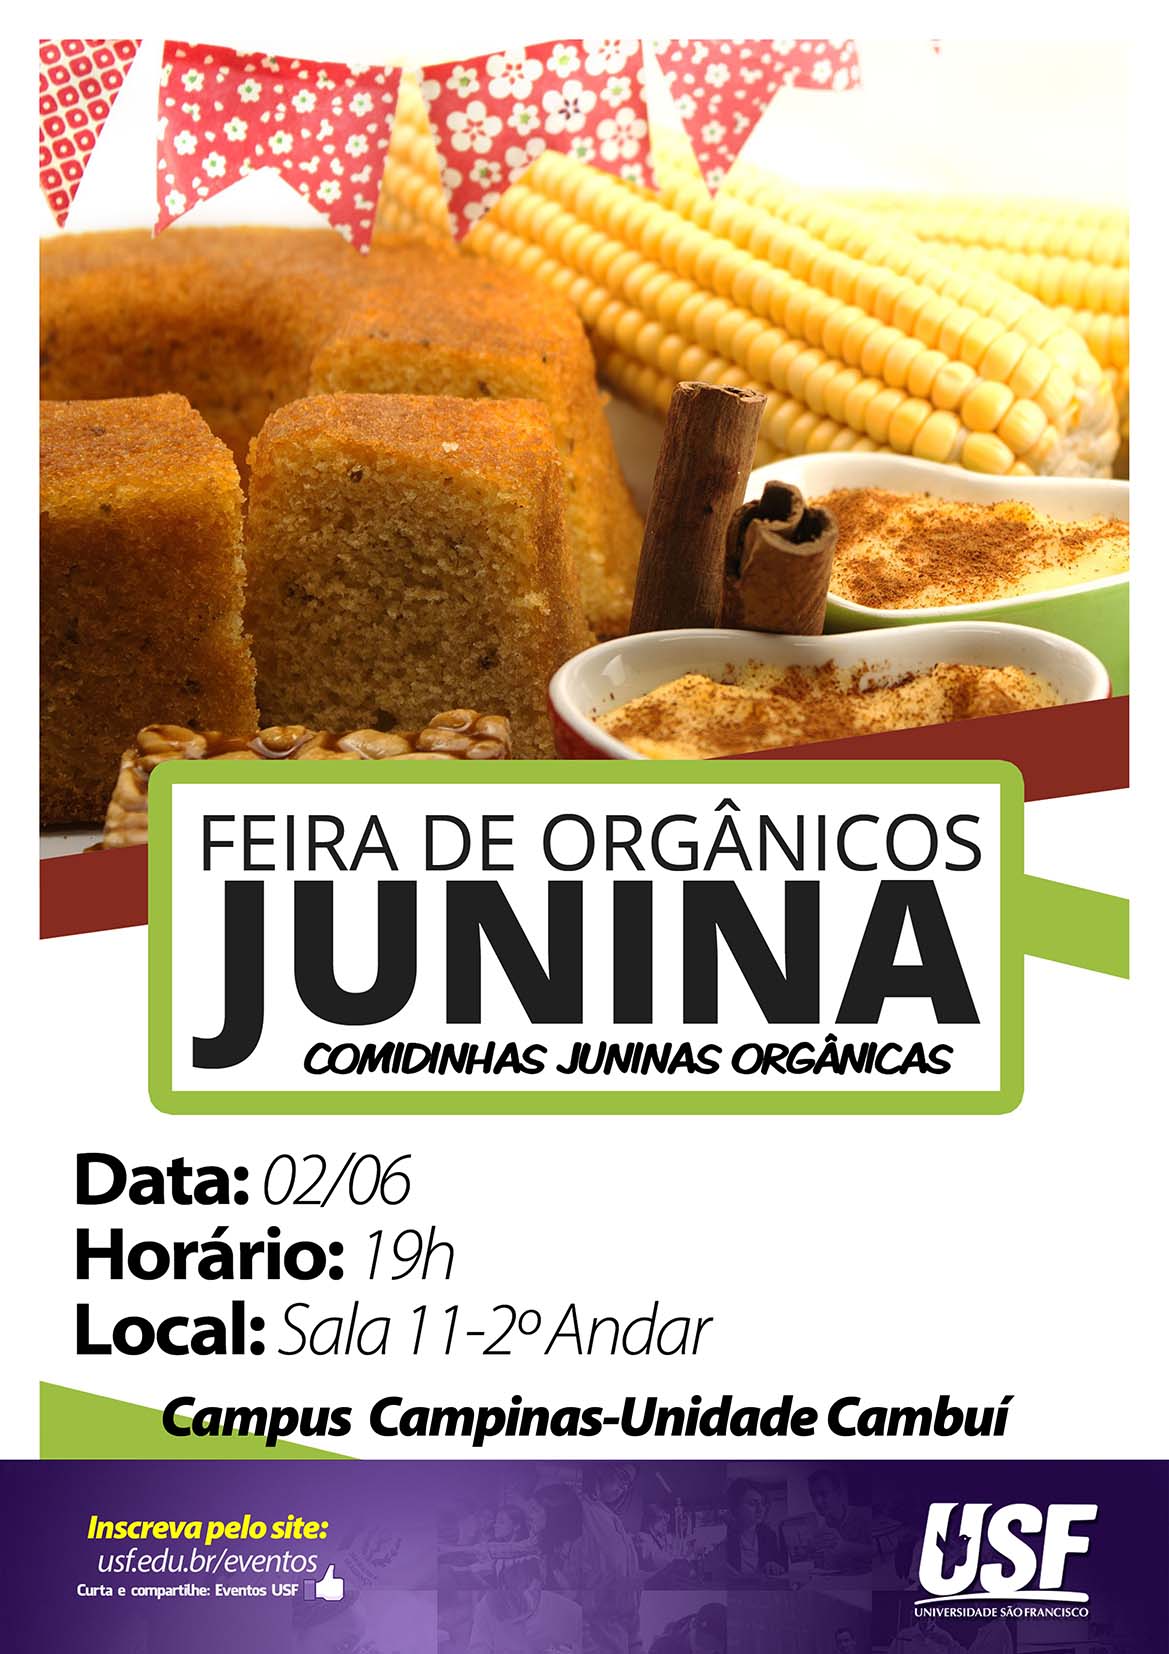 Curso de Gastronomia da USF promove Feira de orgânicos JUNINA